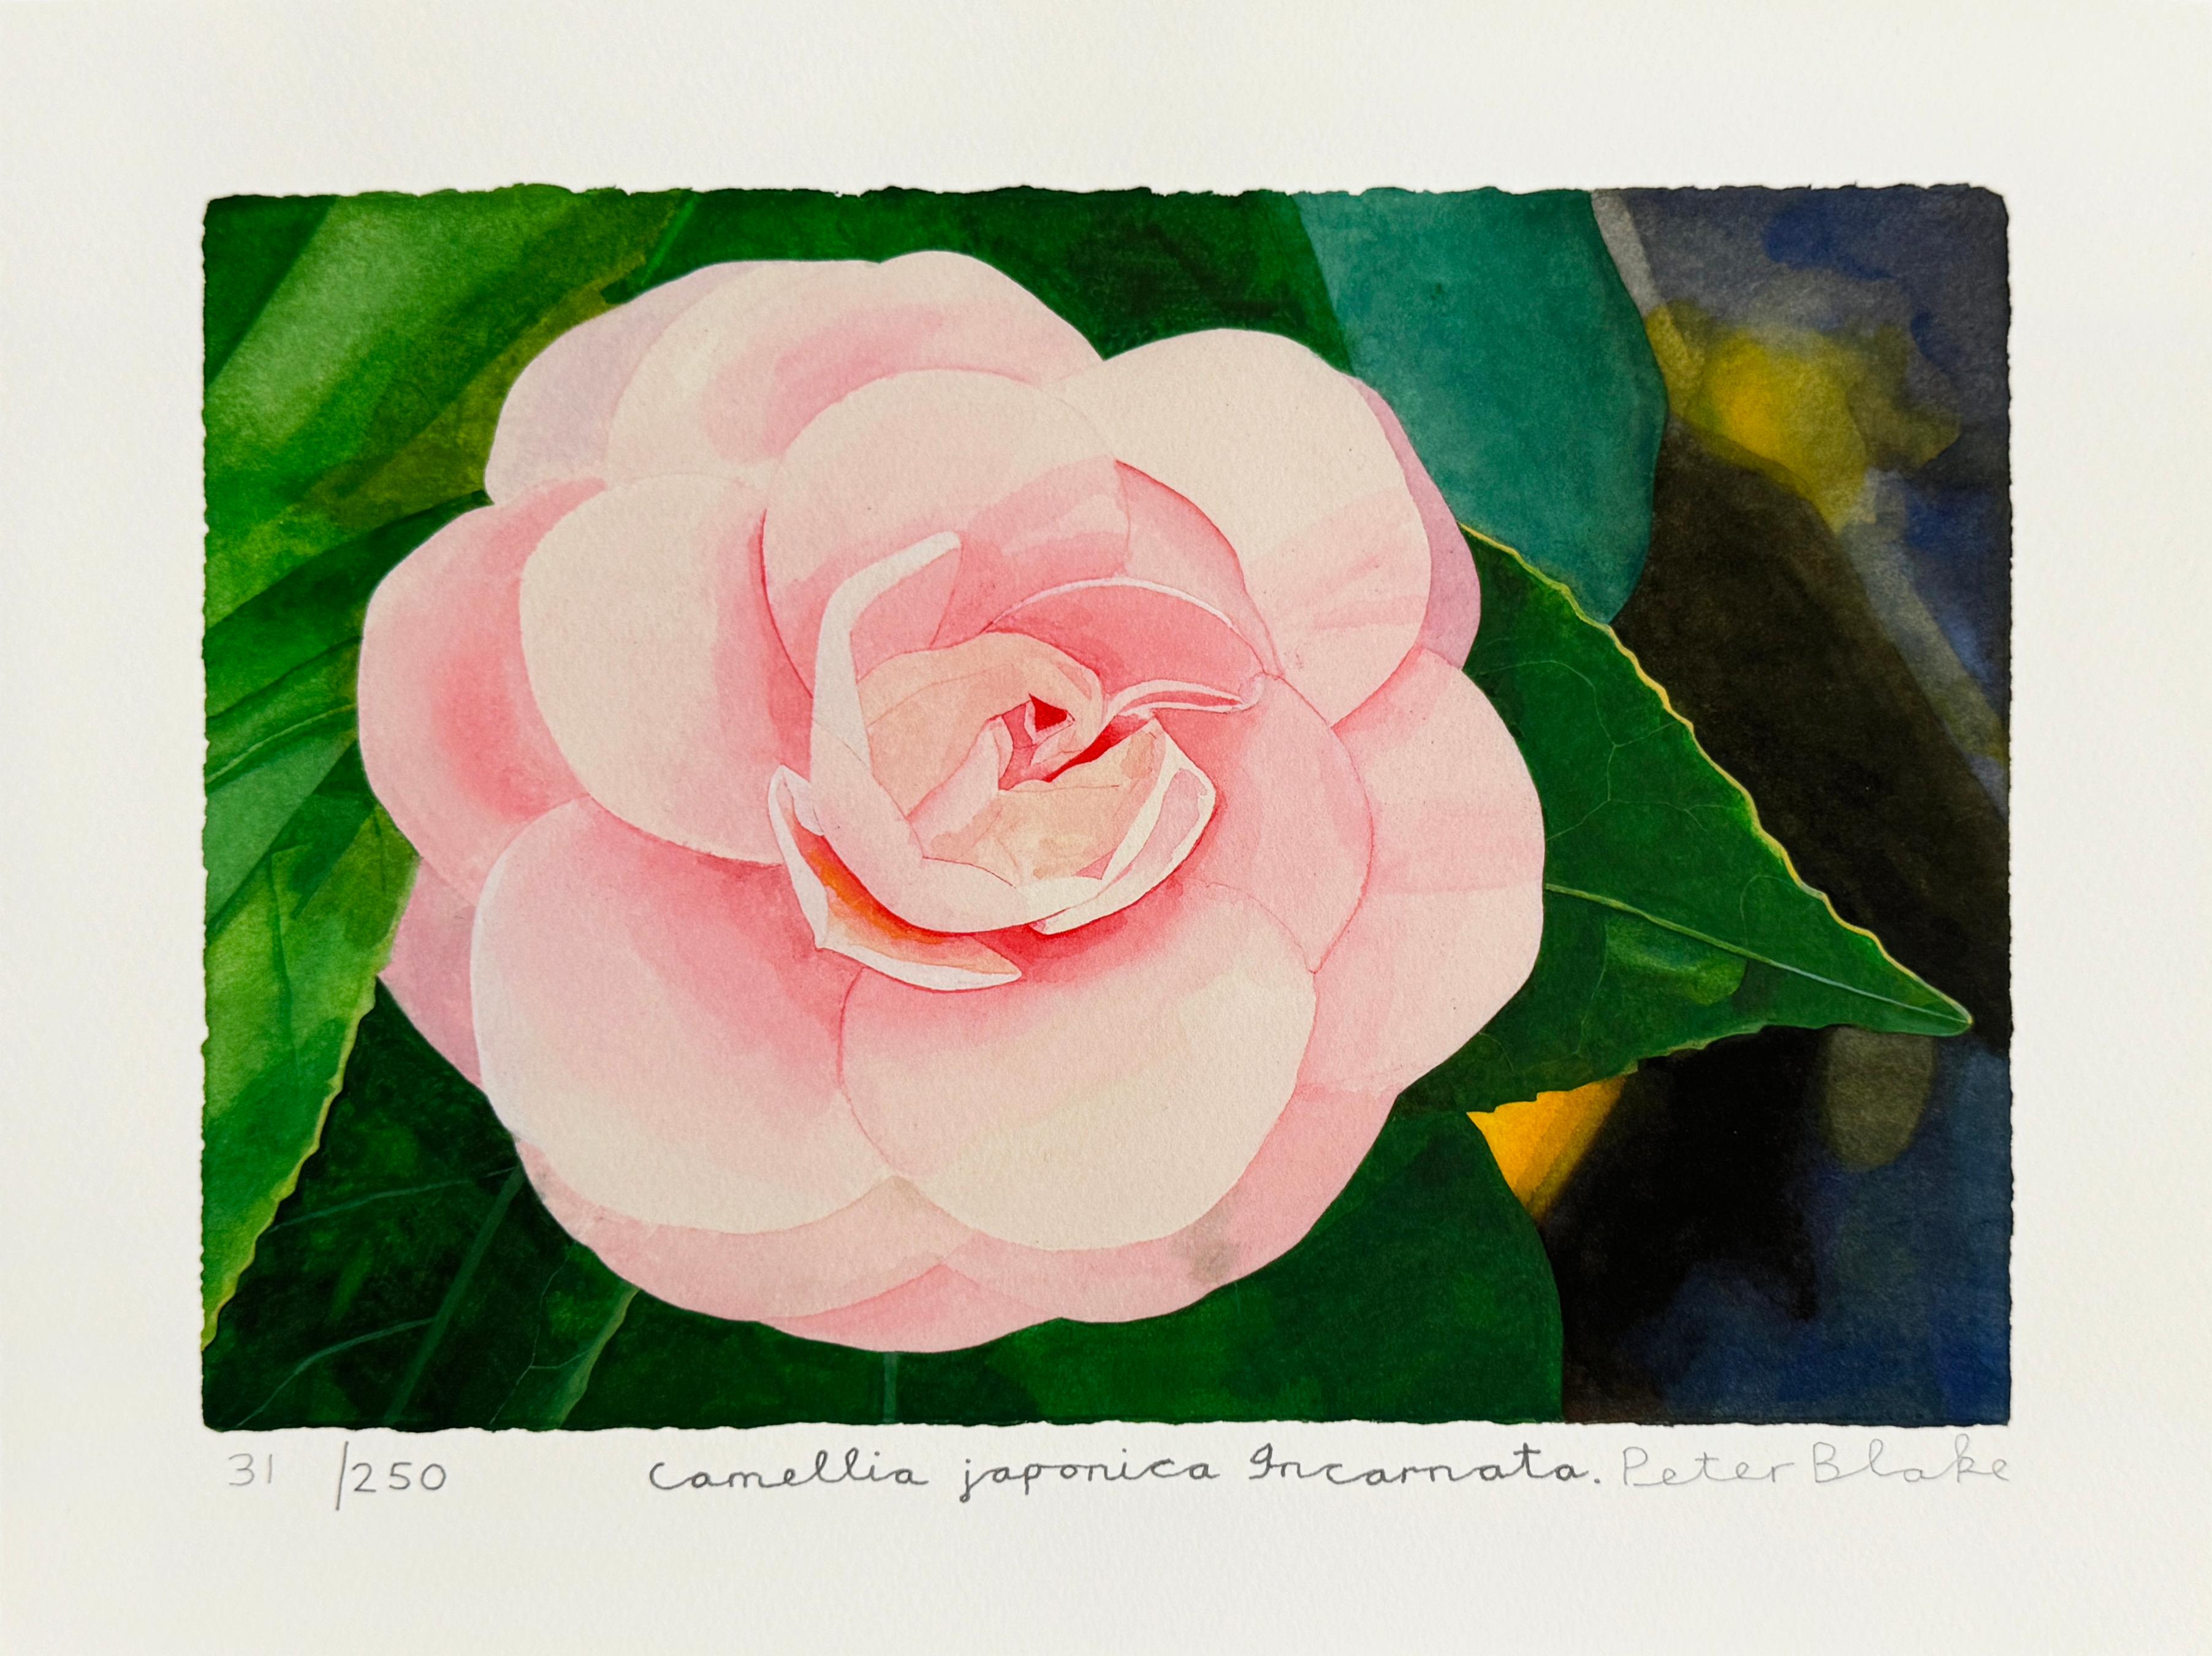 Camellia Japonica Incarnata